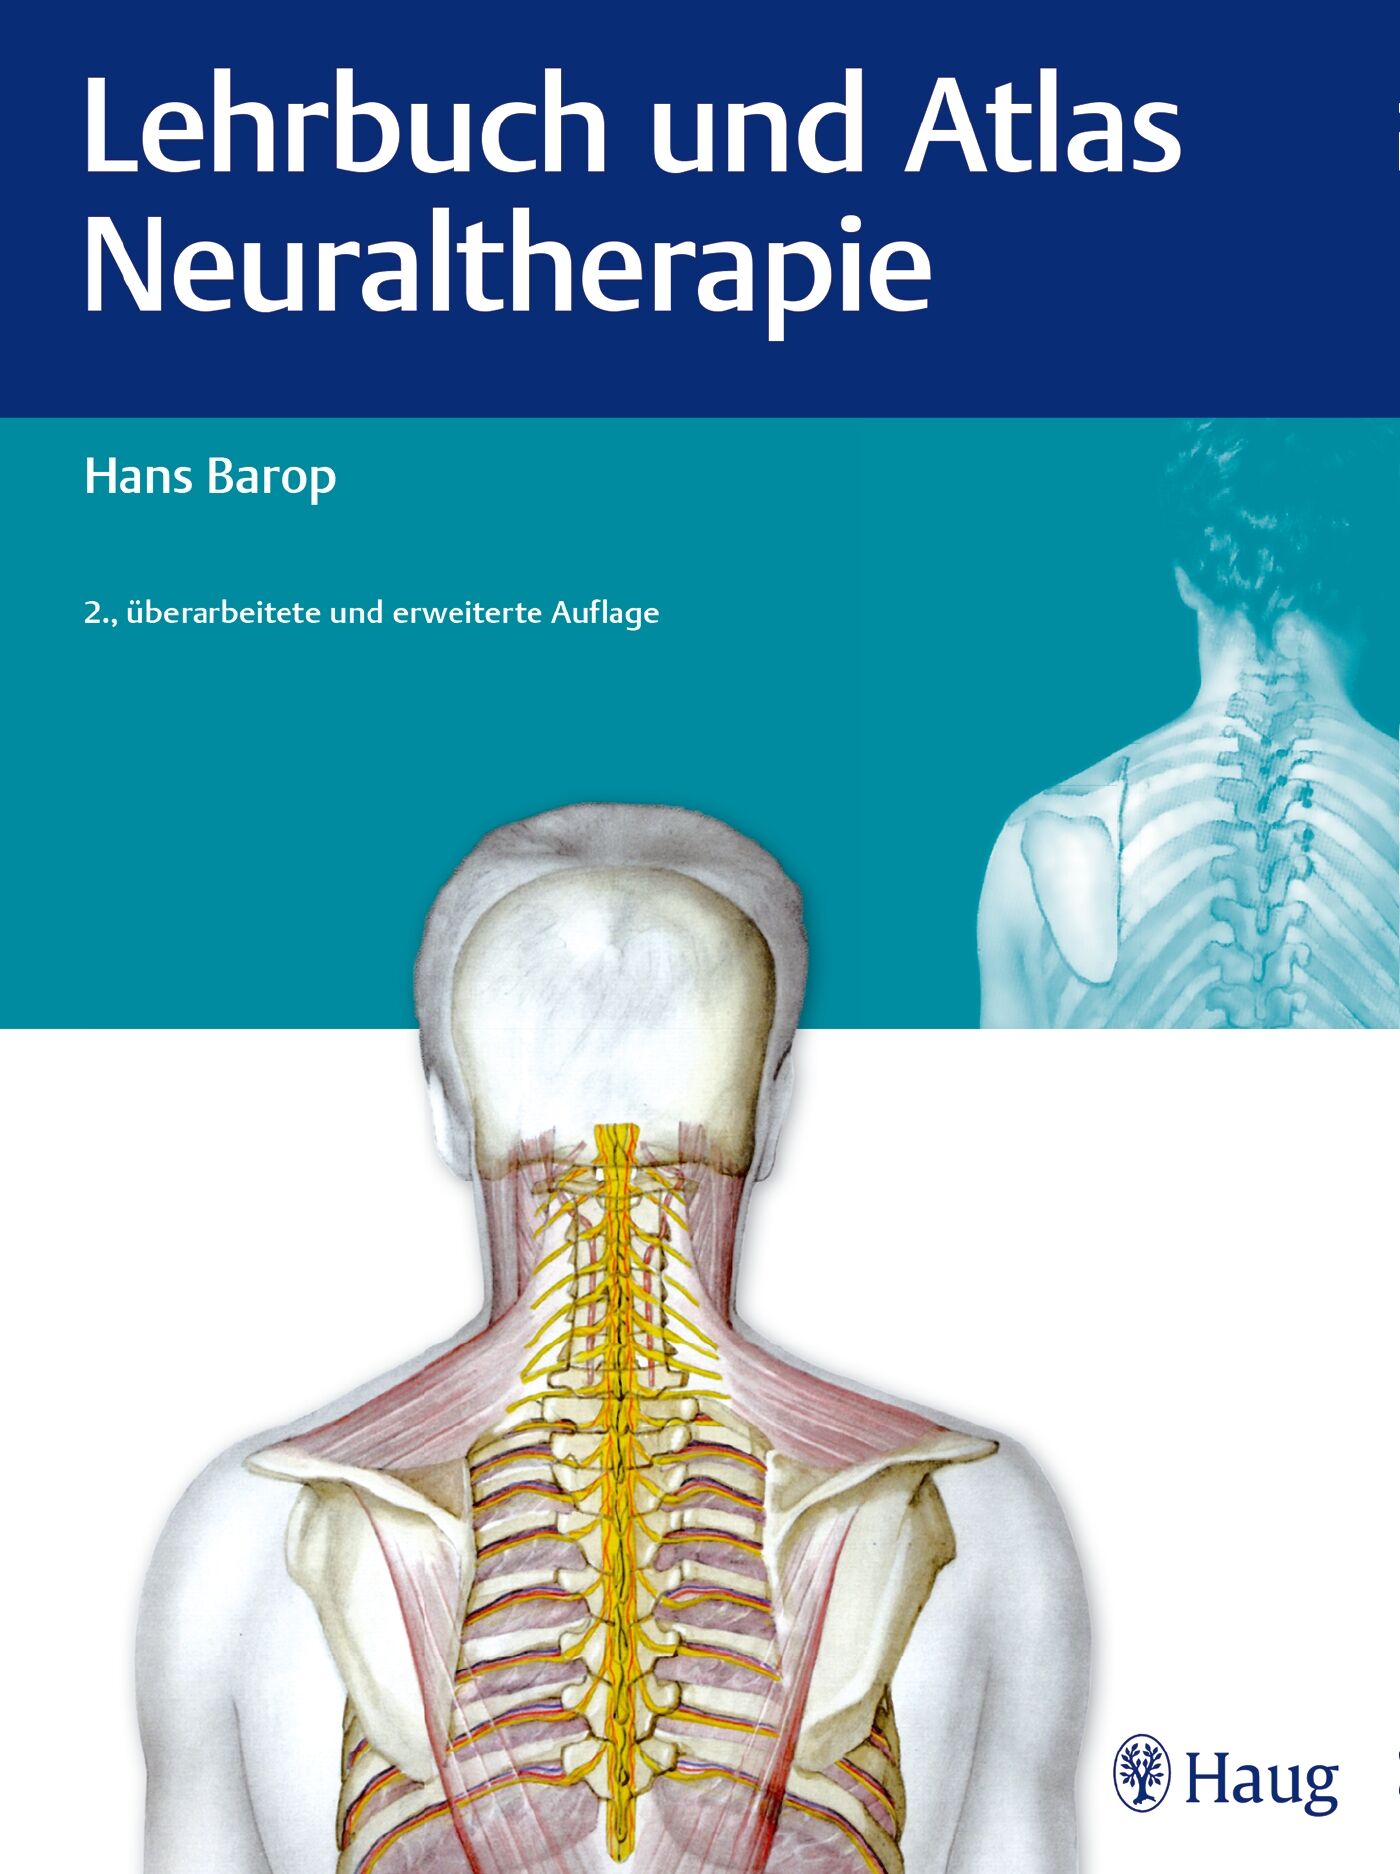 Lehrbuch und Atlas Neuraltherapie, 9783830477679